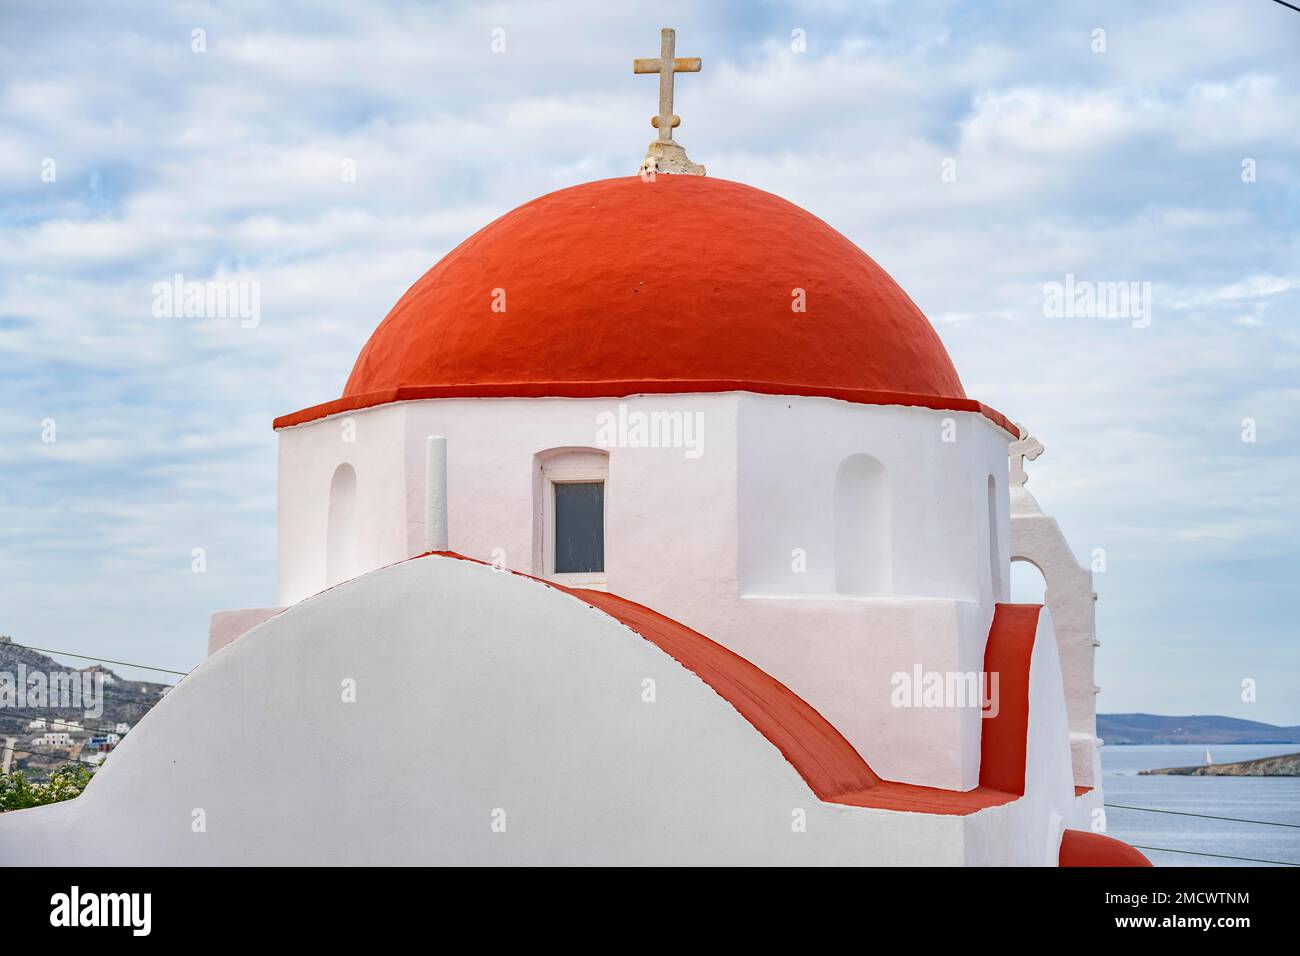 Église blanche à dôme rouge, petite église cycladique Agios Spyridon, ruelles de la vieille ville de Chora, ville de Mykonos, Mykonos, Cyclades, Grèce Banque D'Images